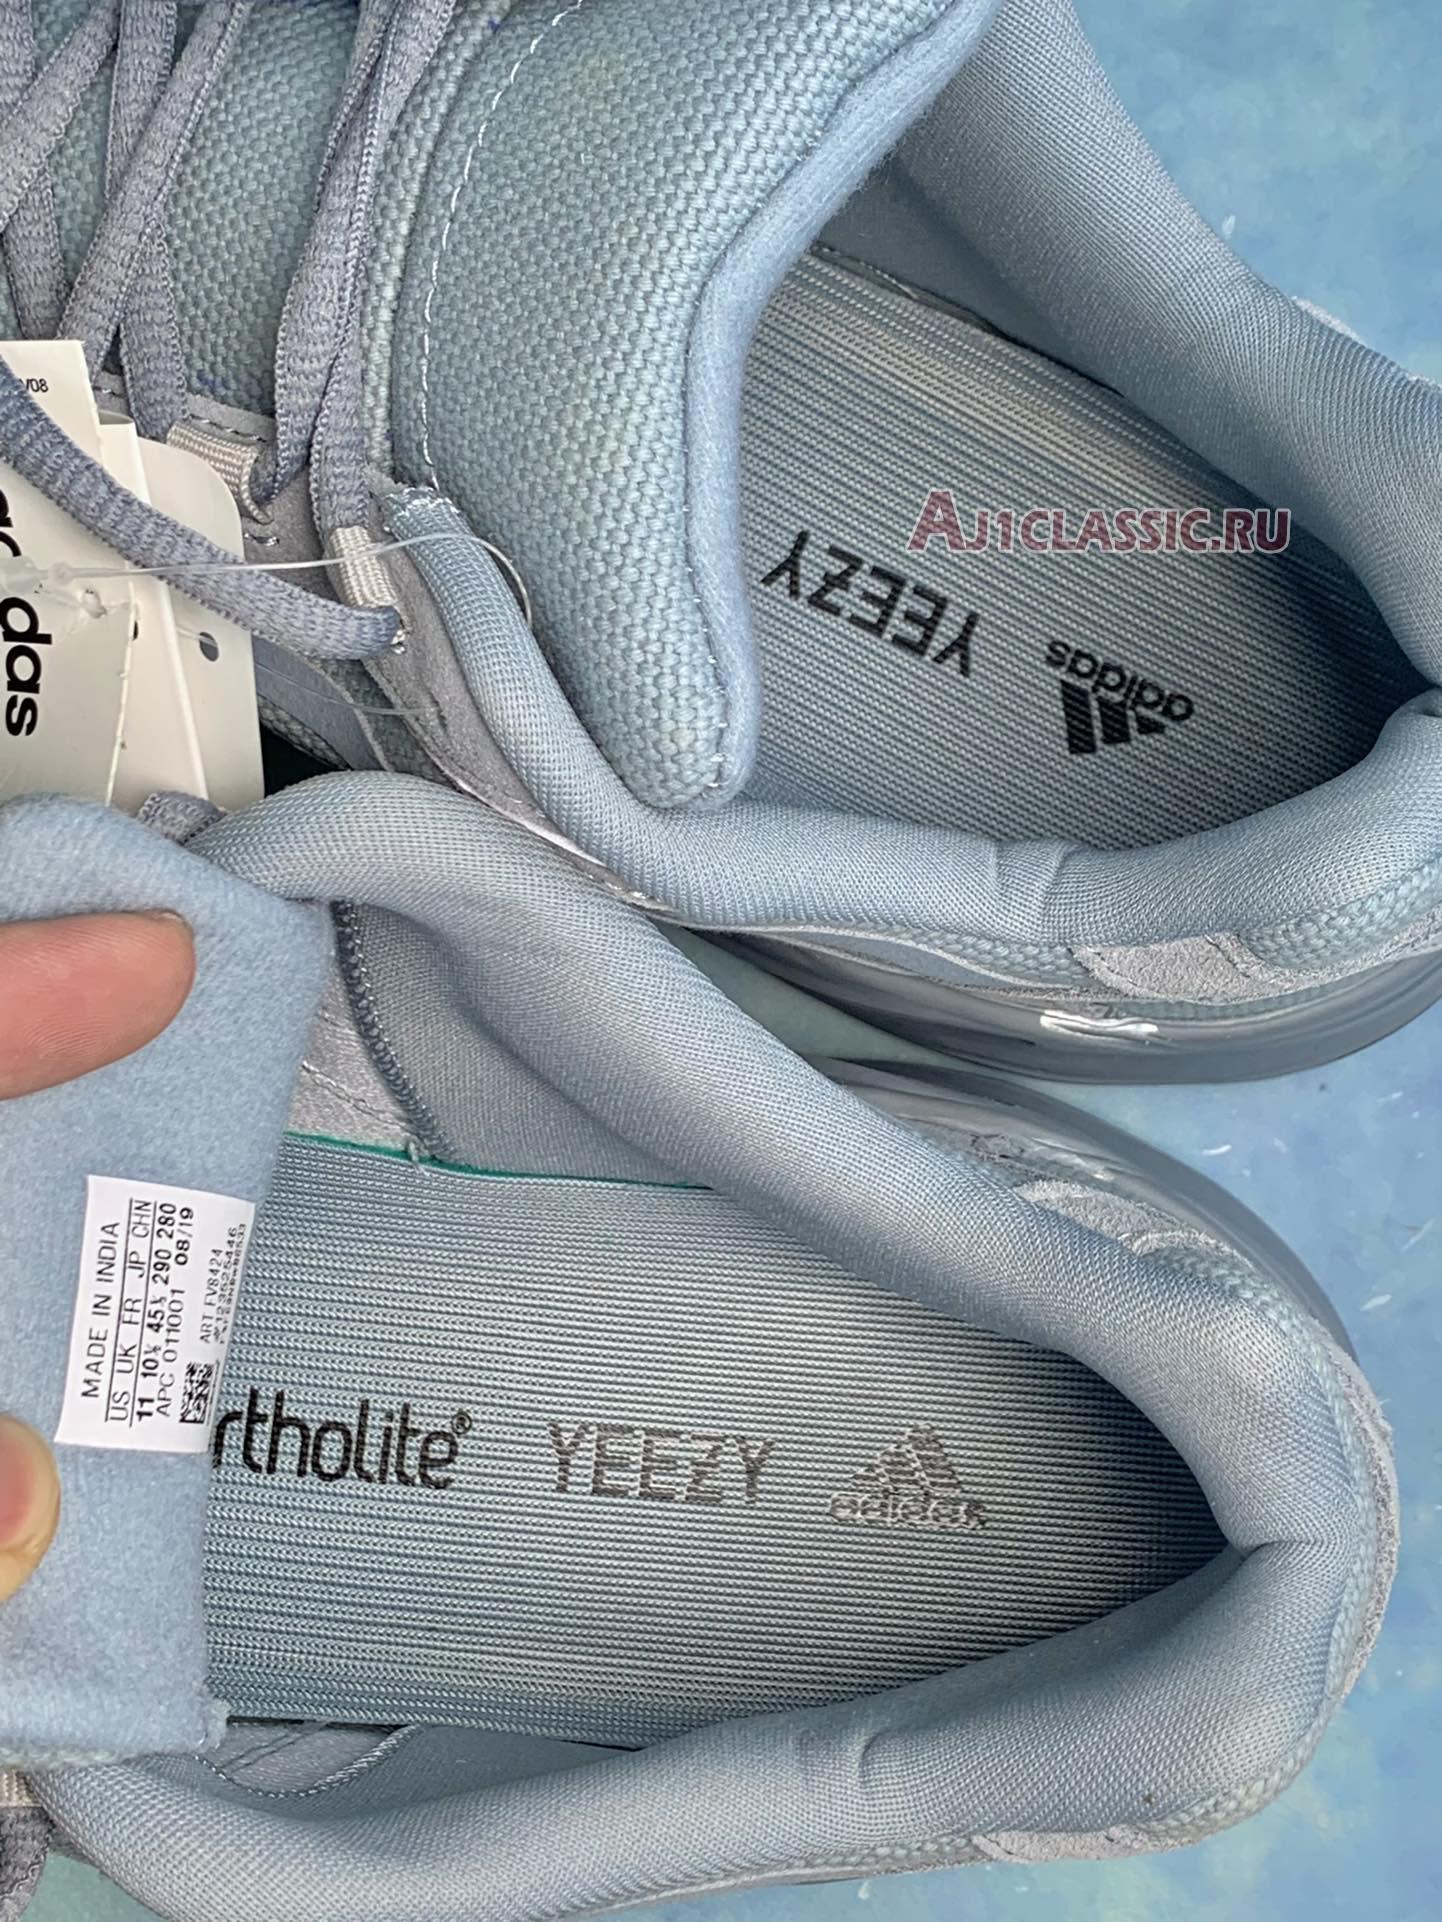 Adidas Yeezy Boost 700 V2 "Hospital Blue" FV8424-2